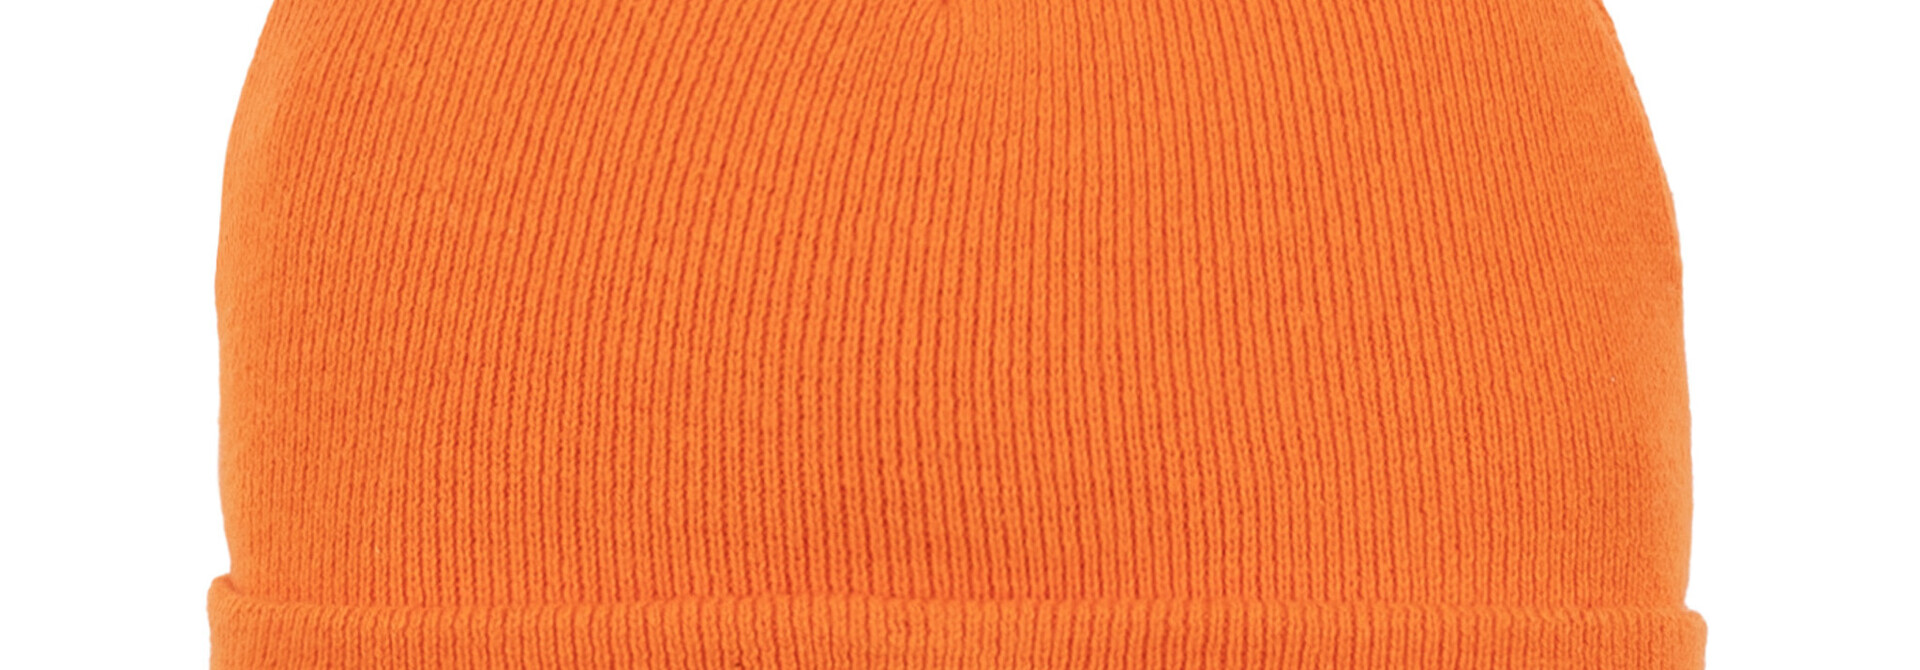 Tuque en tricot - BASIC ORANGE